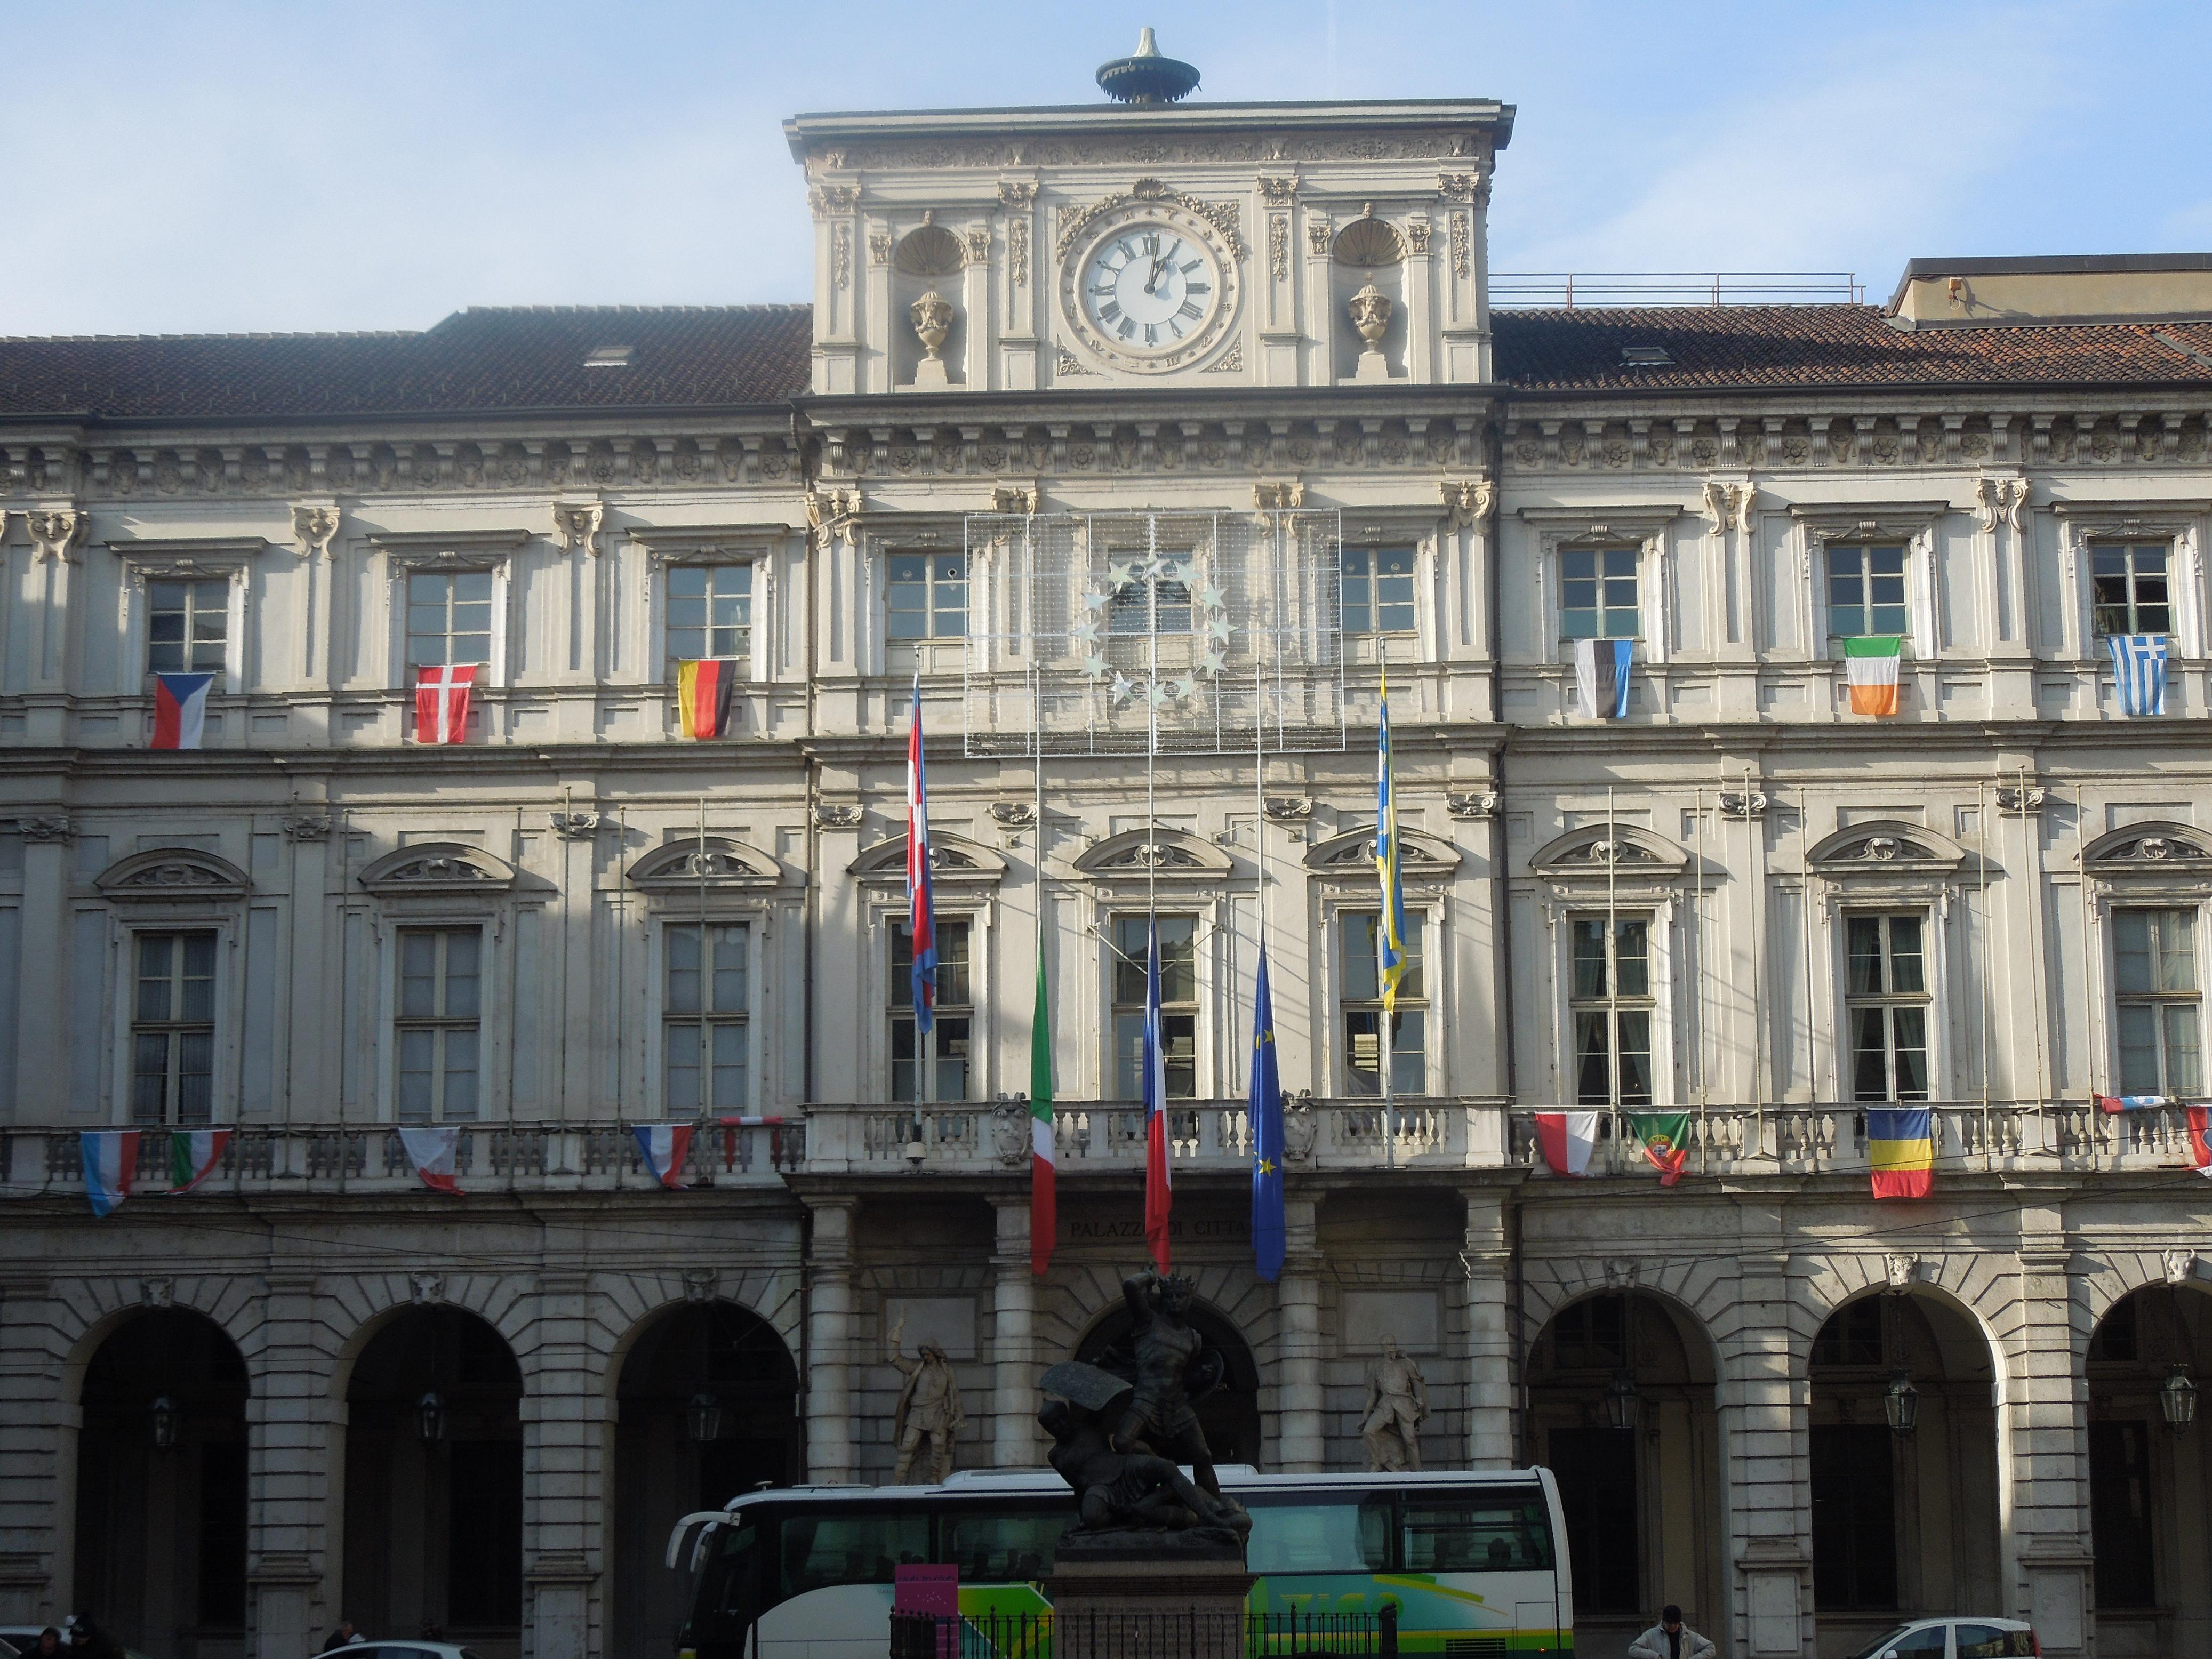 Tirocinio con borsa lavoro presso il Consiglio Comunale di Torino